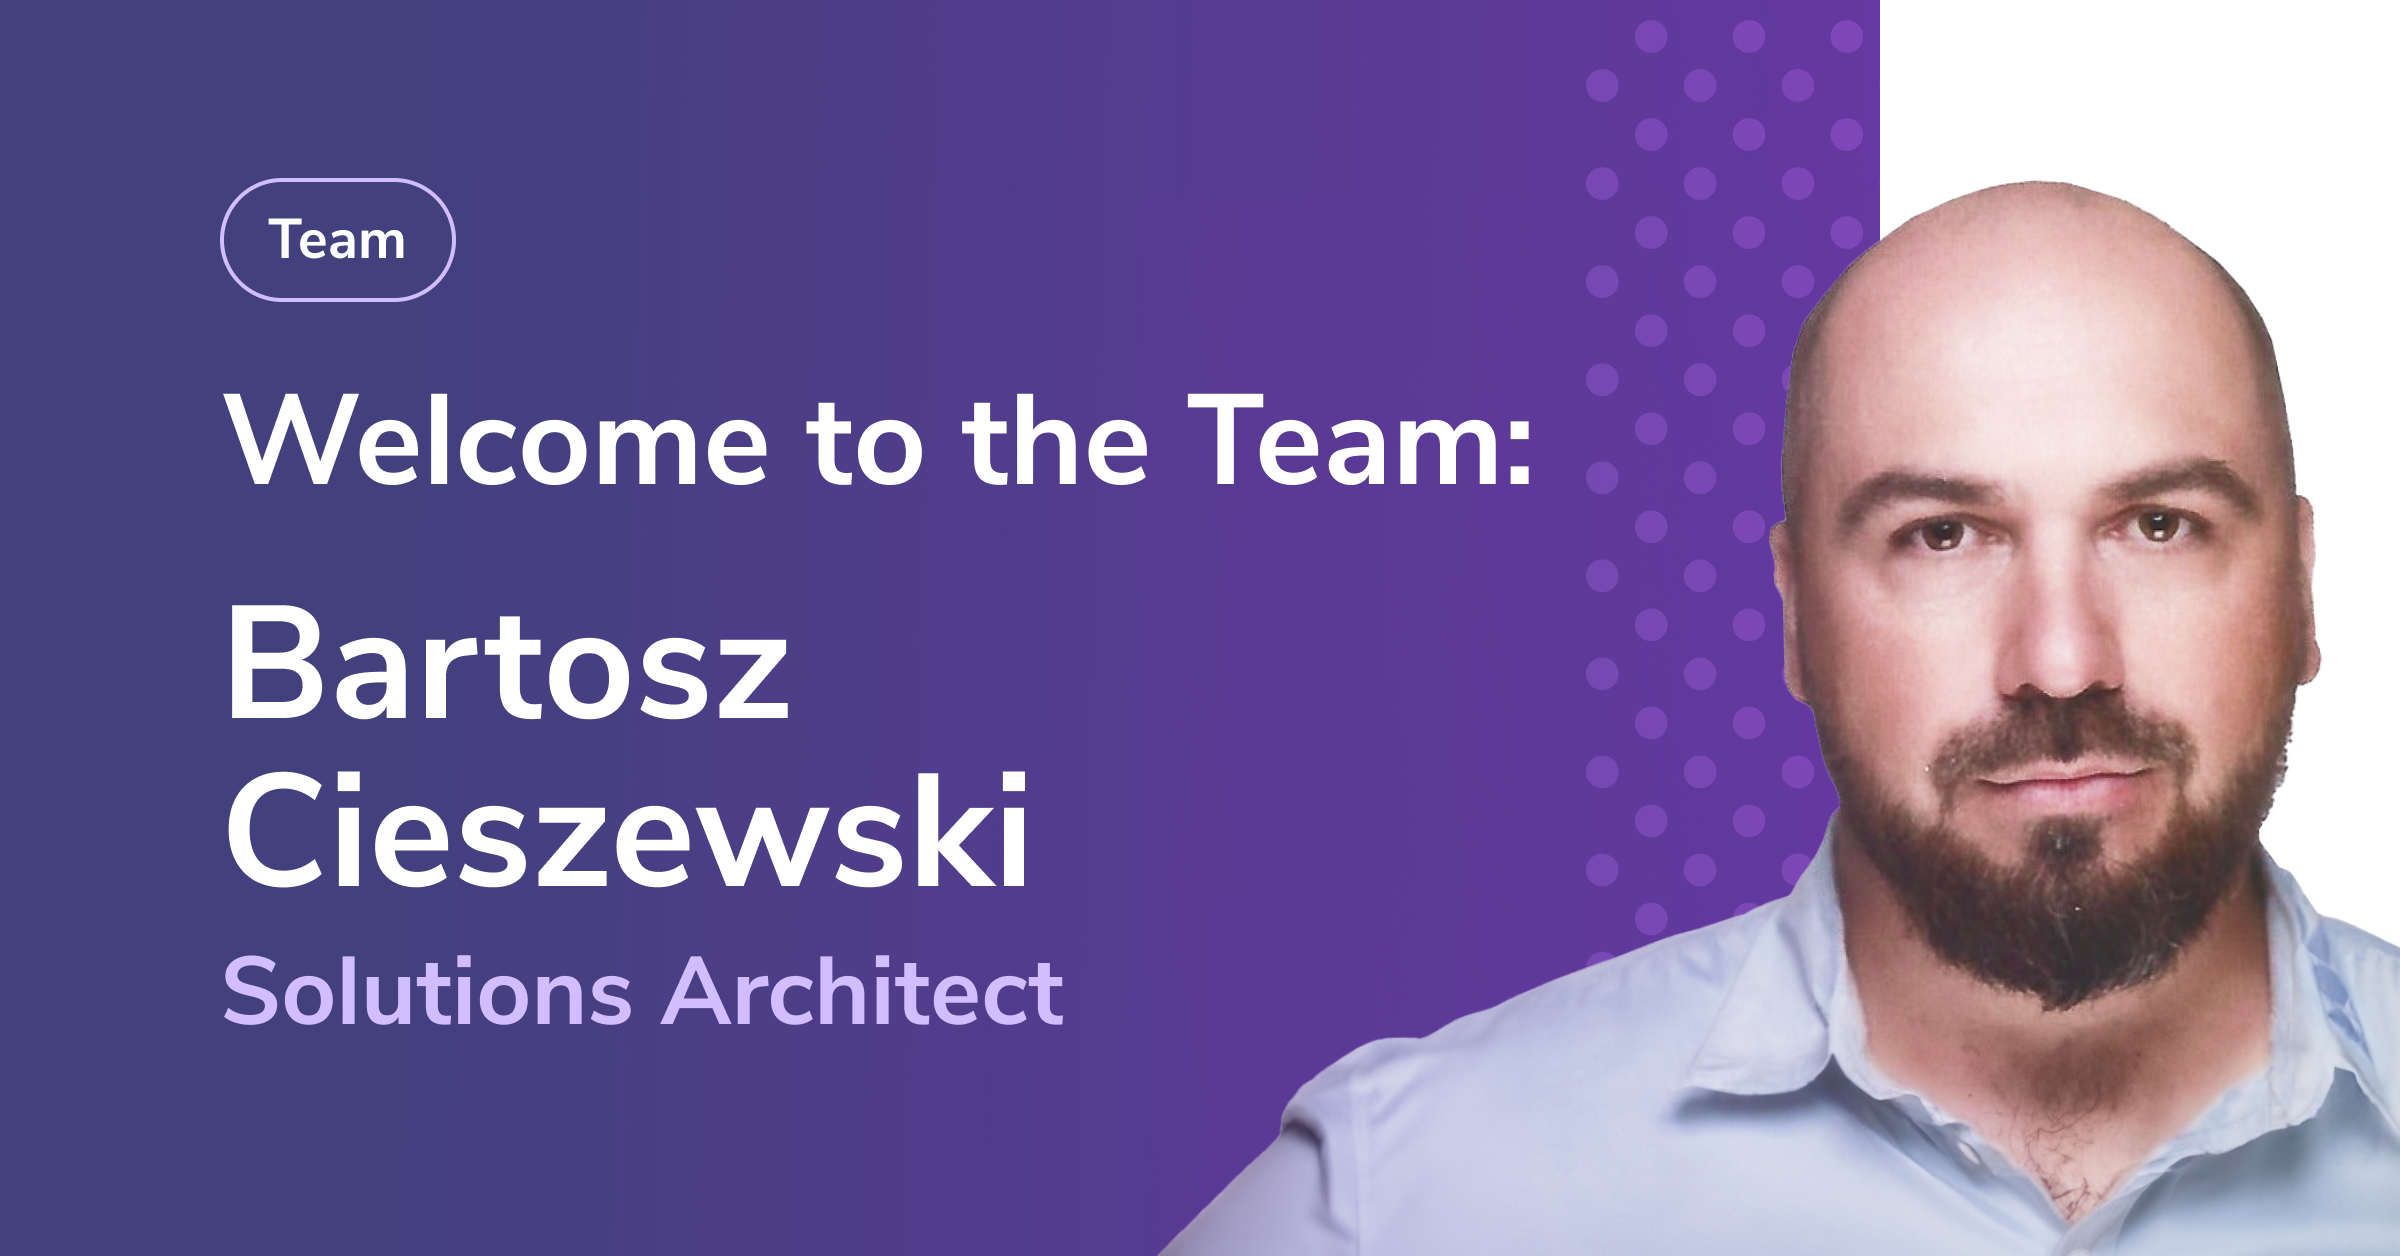 Bartosz Cieszewski joins the Secfense team. He will strengthen the technology development division